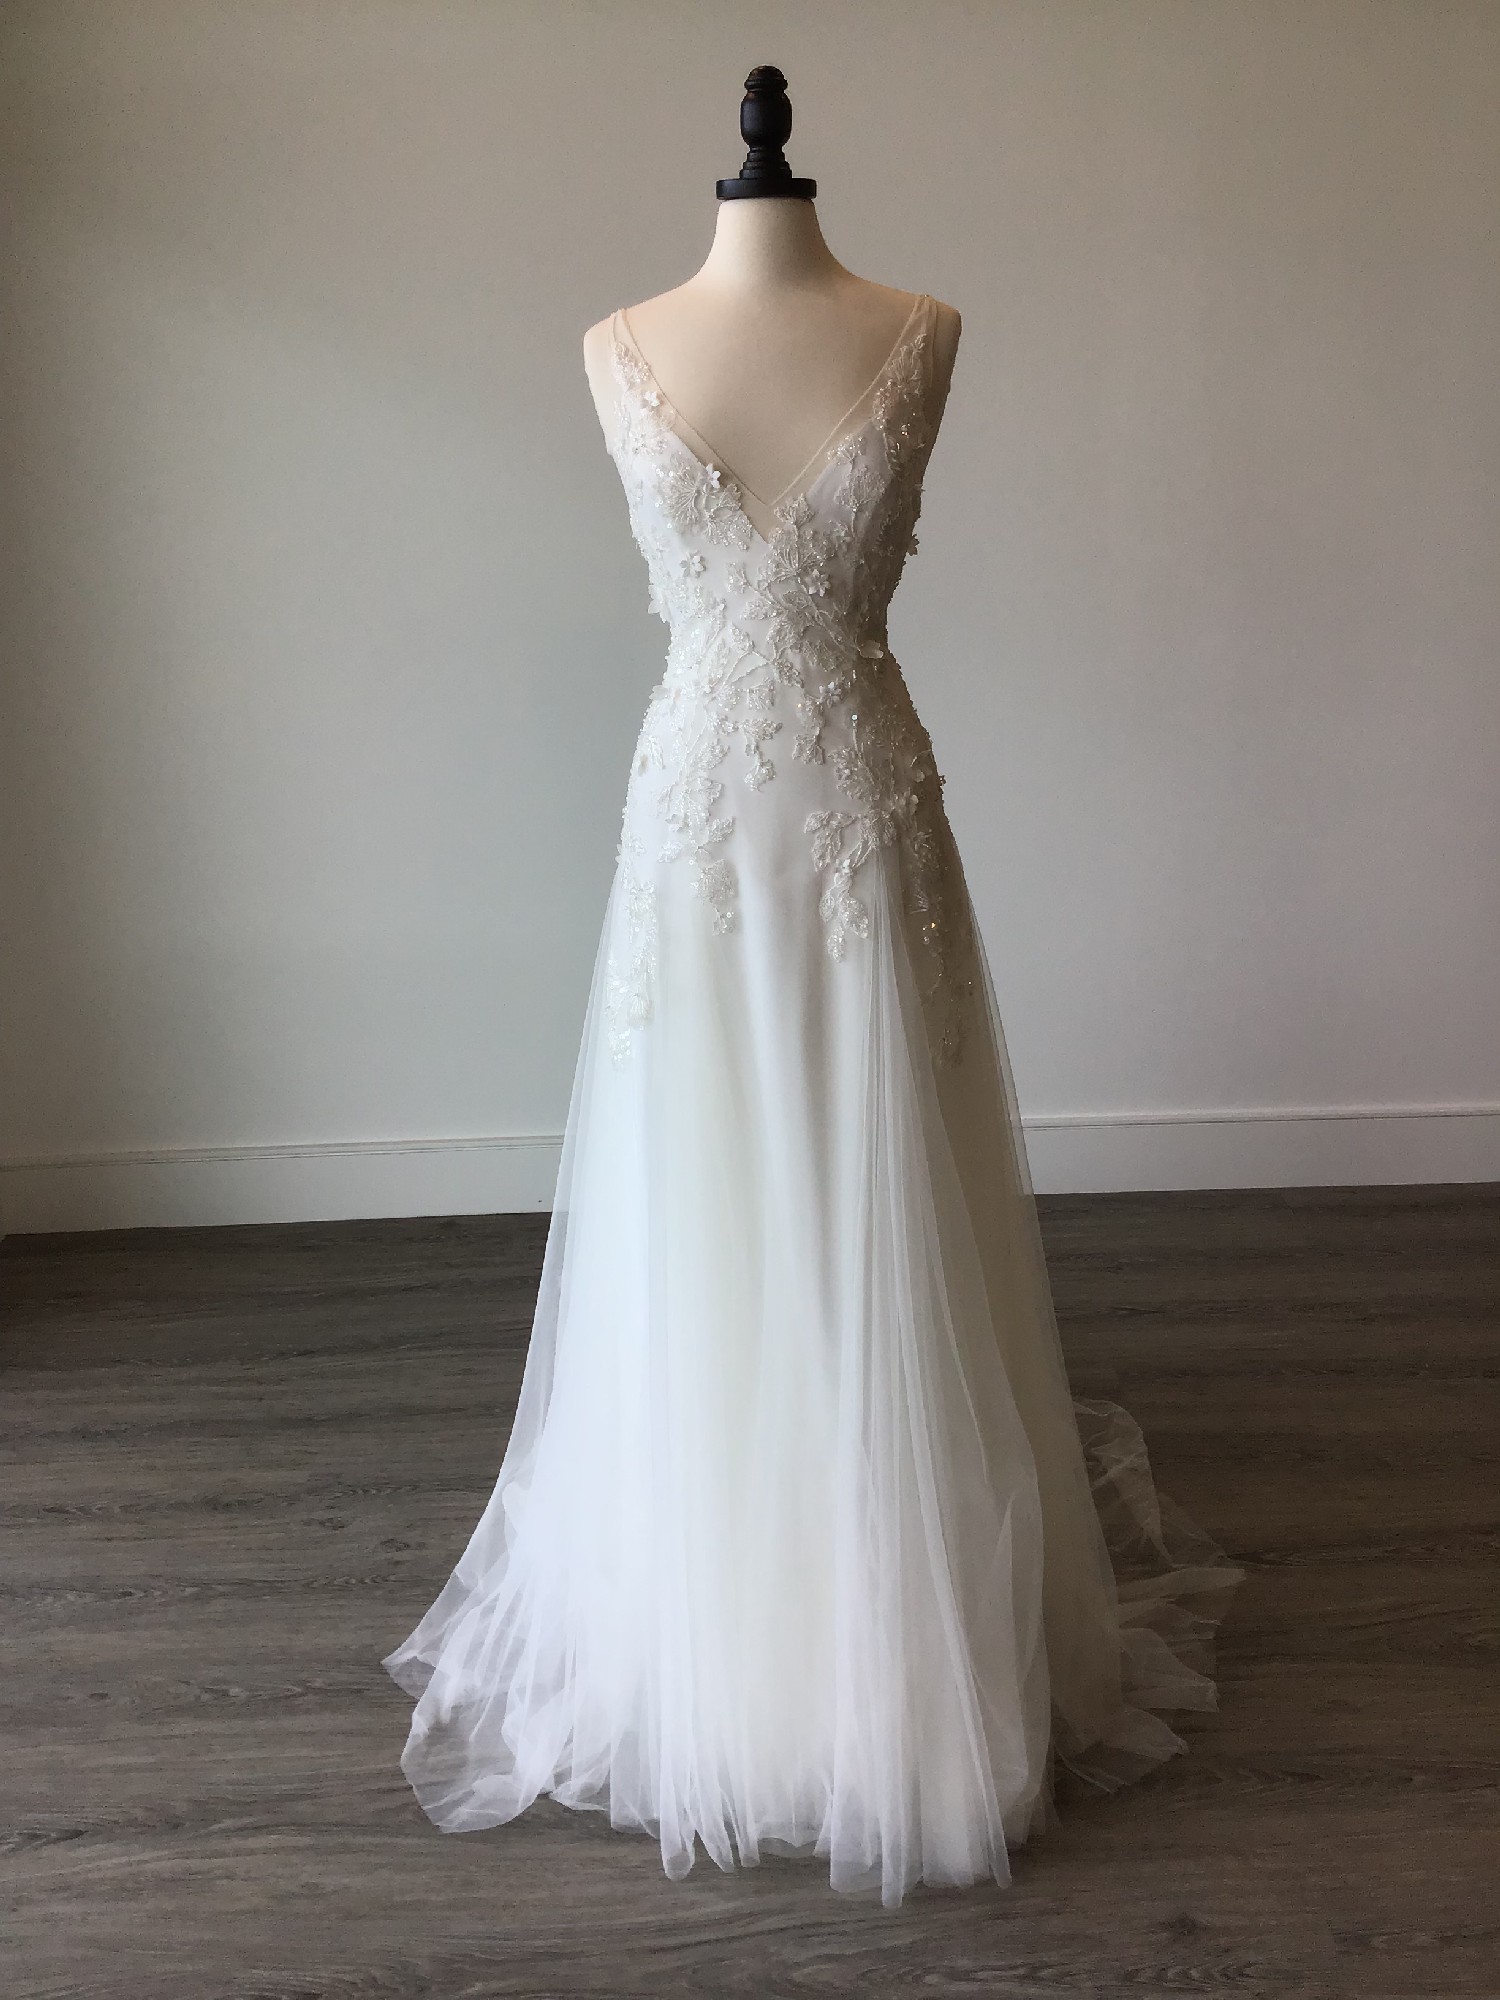 Alena Leena Bridal Poppy Sample Wedding Dress Save 22% - Stillwhite